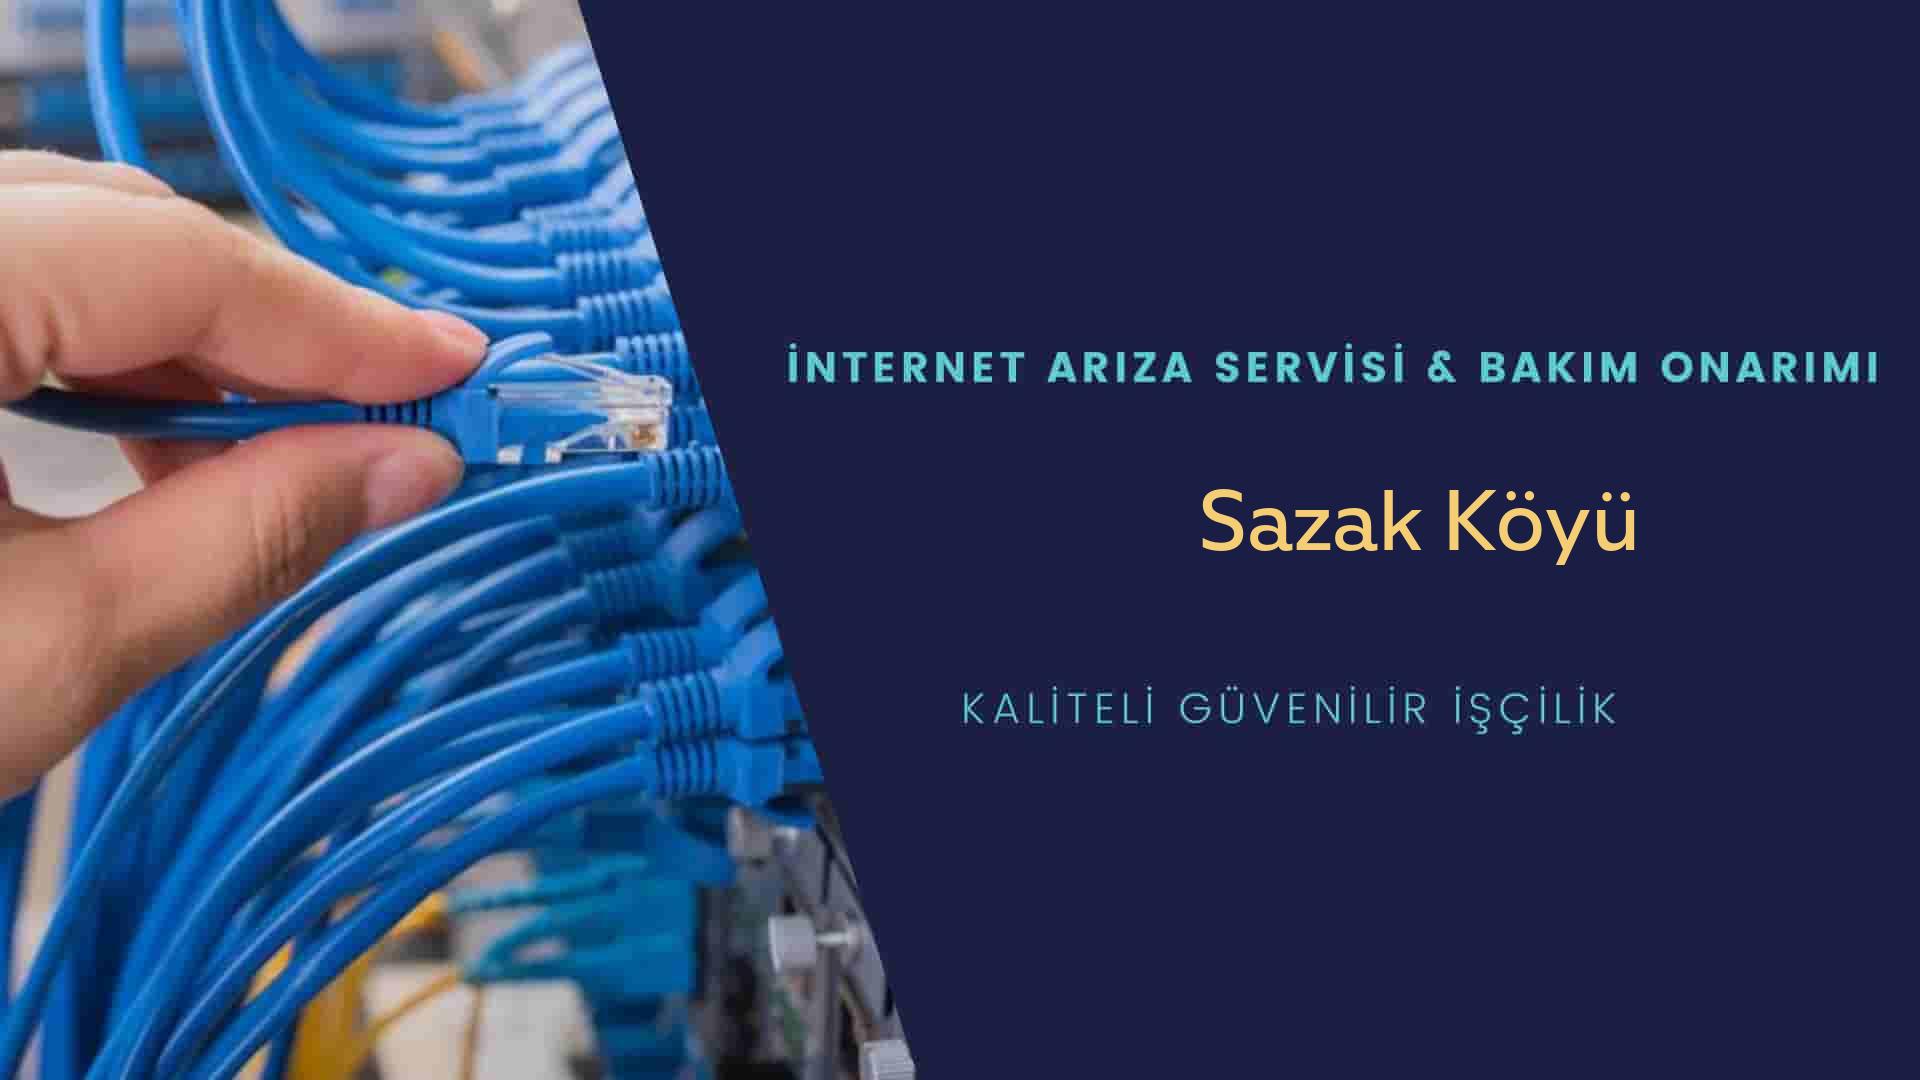 Sazak Köyü internet kablosu çekimi yapan yerler veya elektrikçiler mi? arıyorsunuz doğru yerdesiniz o zaman sizlere 7/24 yardımcı olacak profesyonel ustalarımız bir telefon kadar yakındır size.